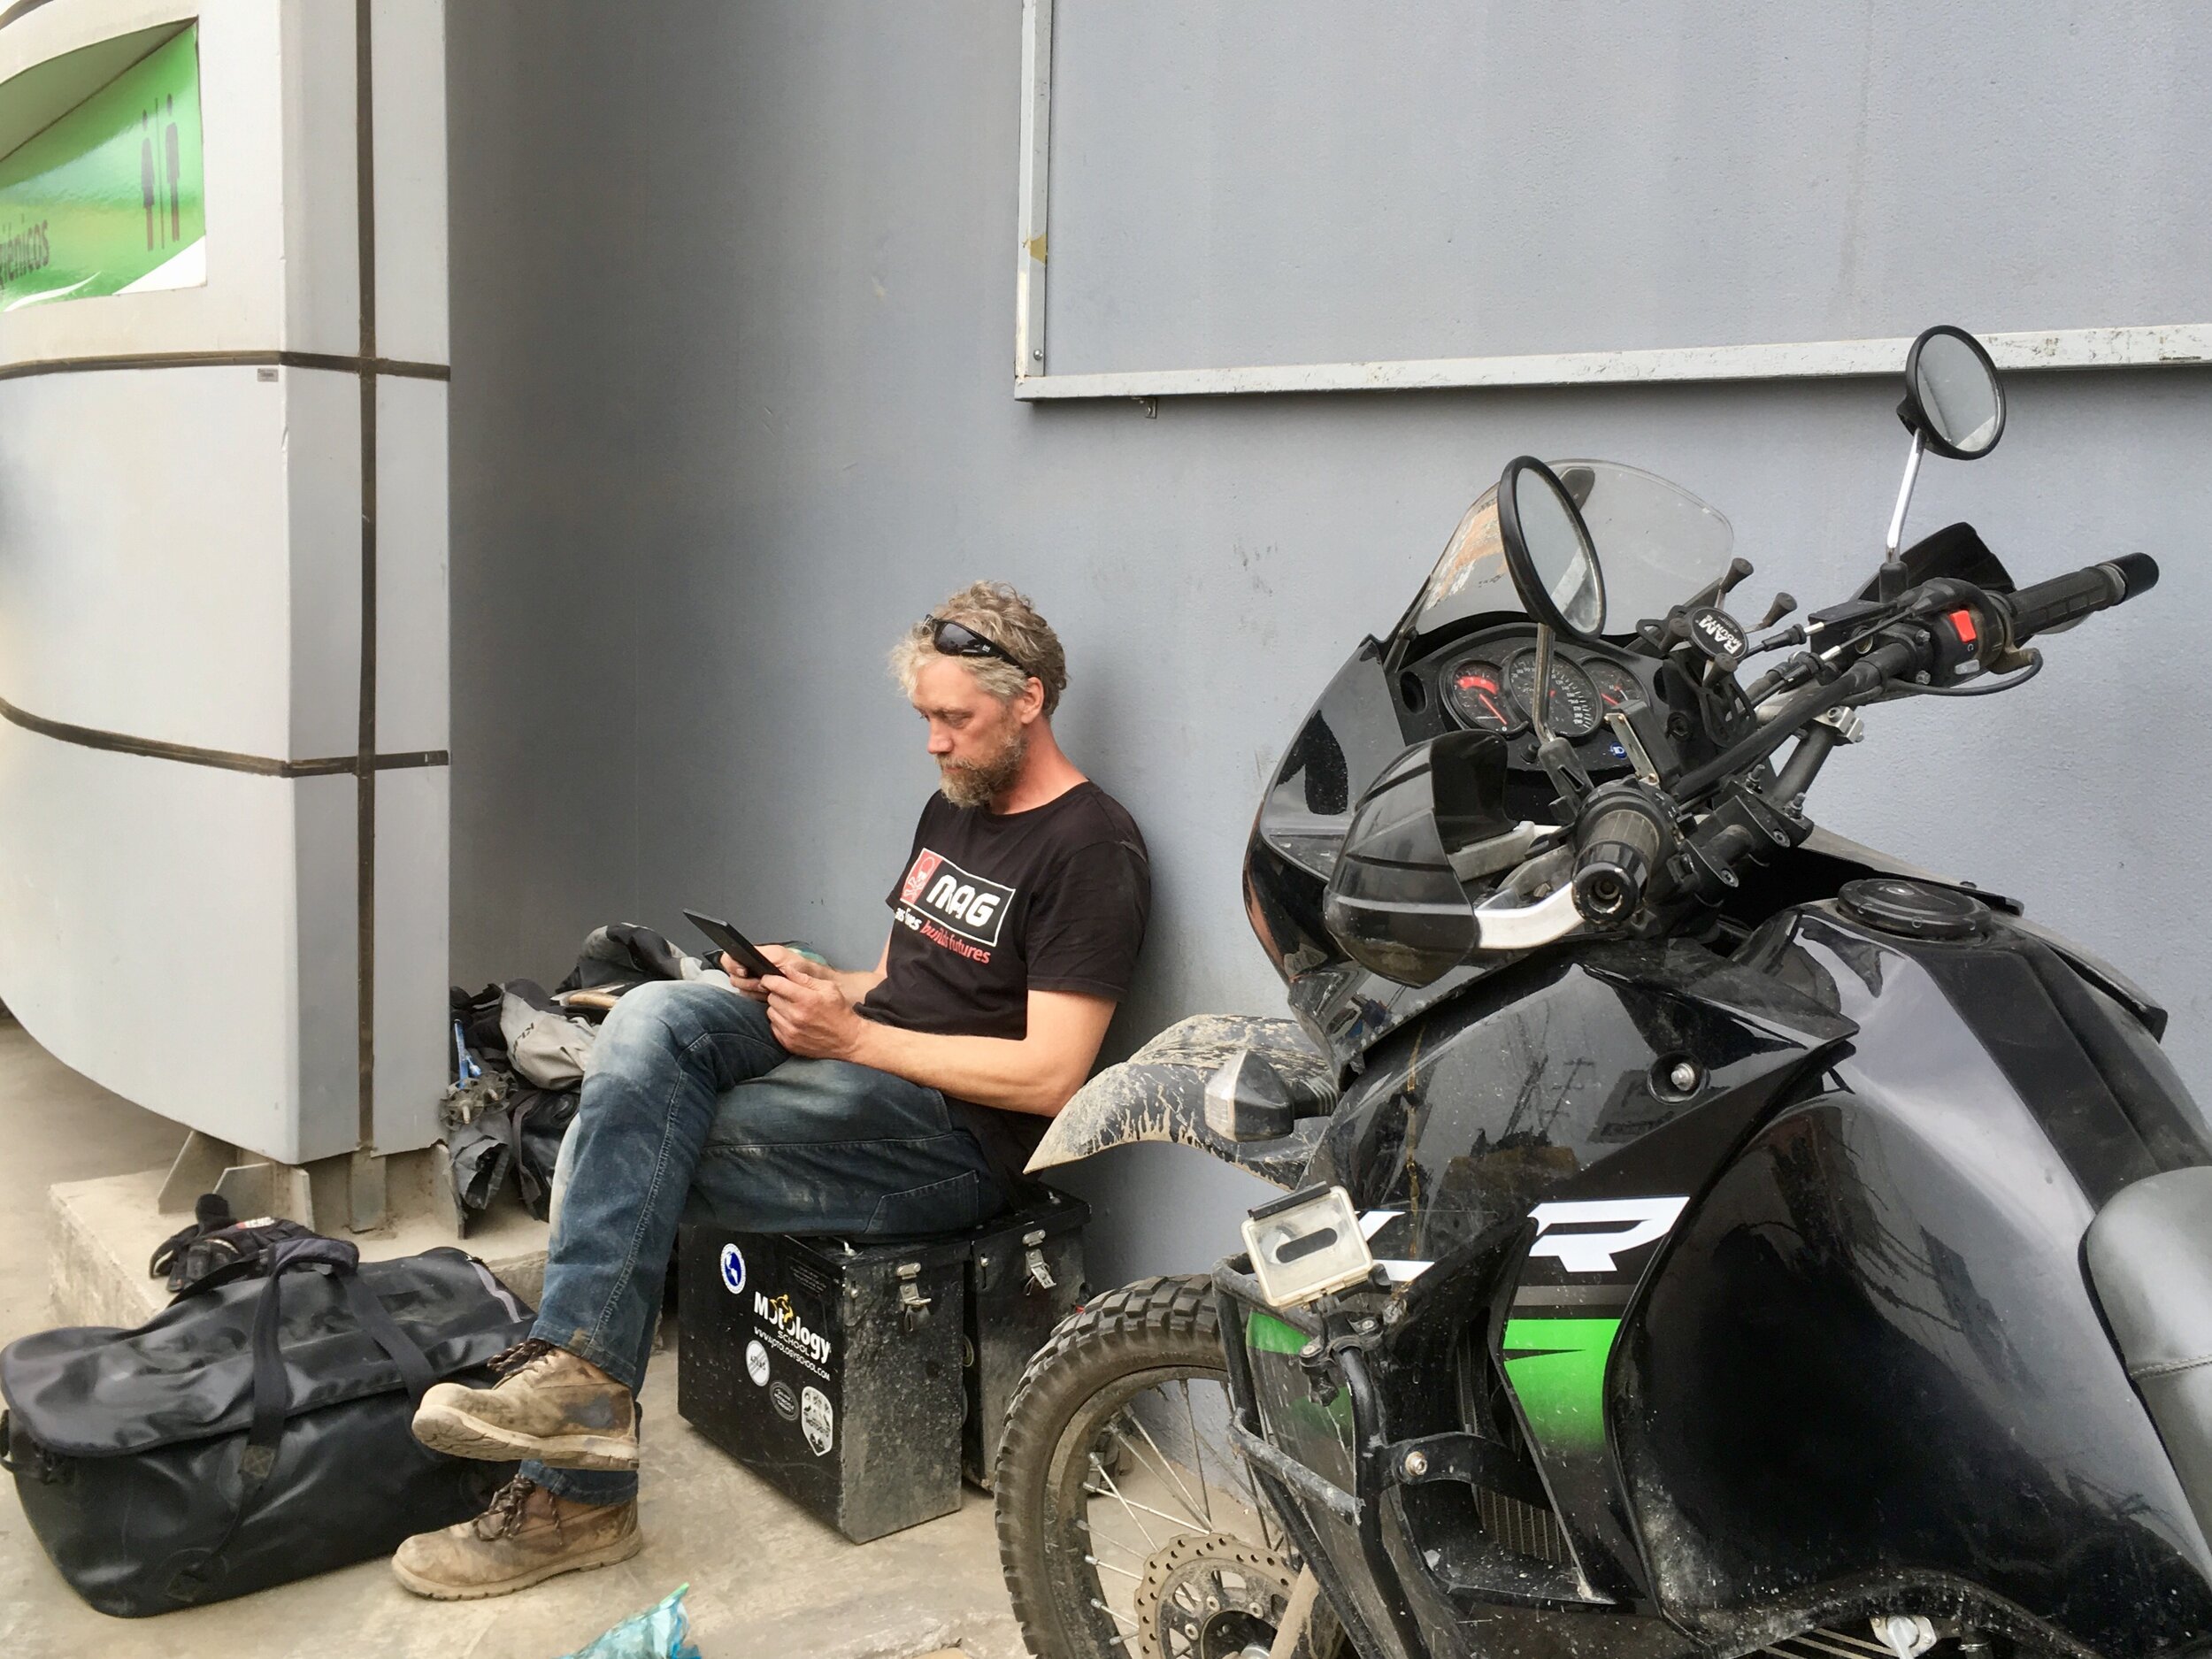 Jeremy_Kroeker_Elle_West_Southward_Chronicles_Adventure_Rider_Radio_Motorcycle_Podcast_71.jpeg